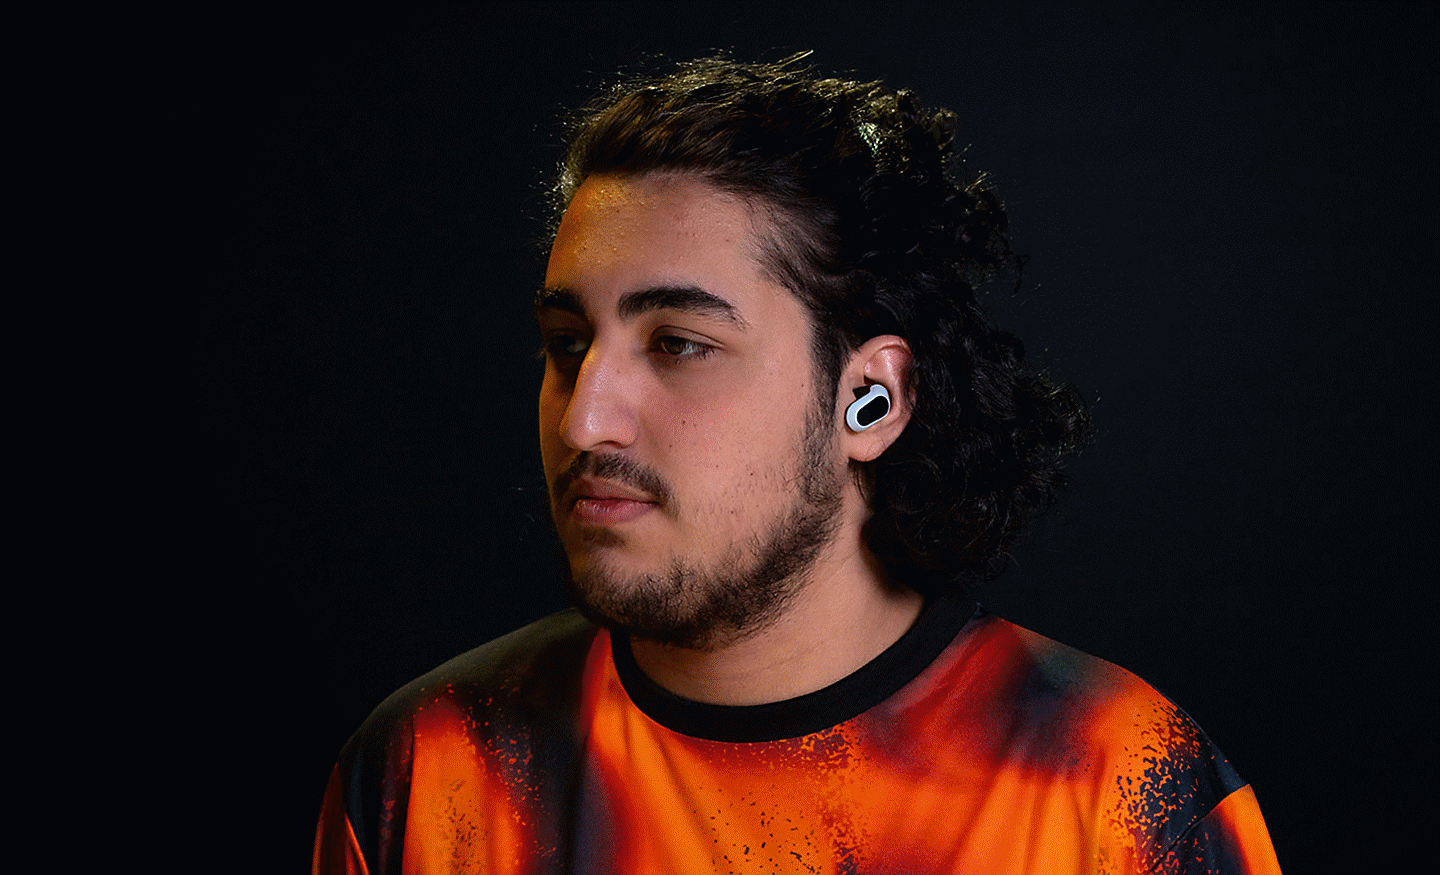 Profilna slika igrača Alfajer na kojoj nosi par belih slušalica INZONE Buds